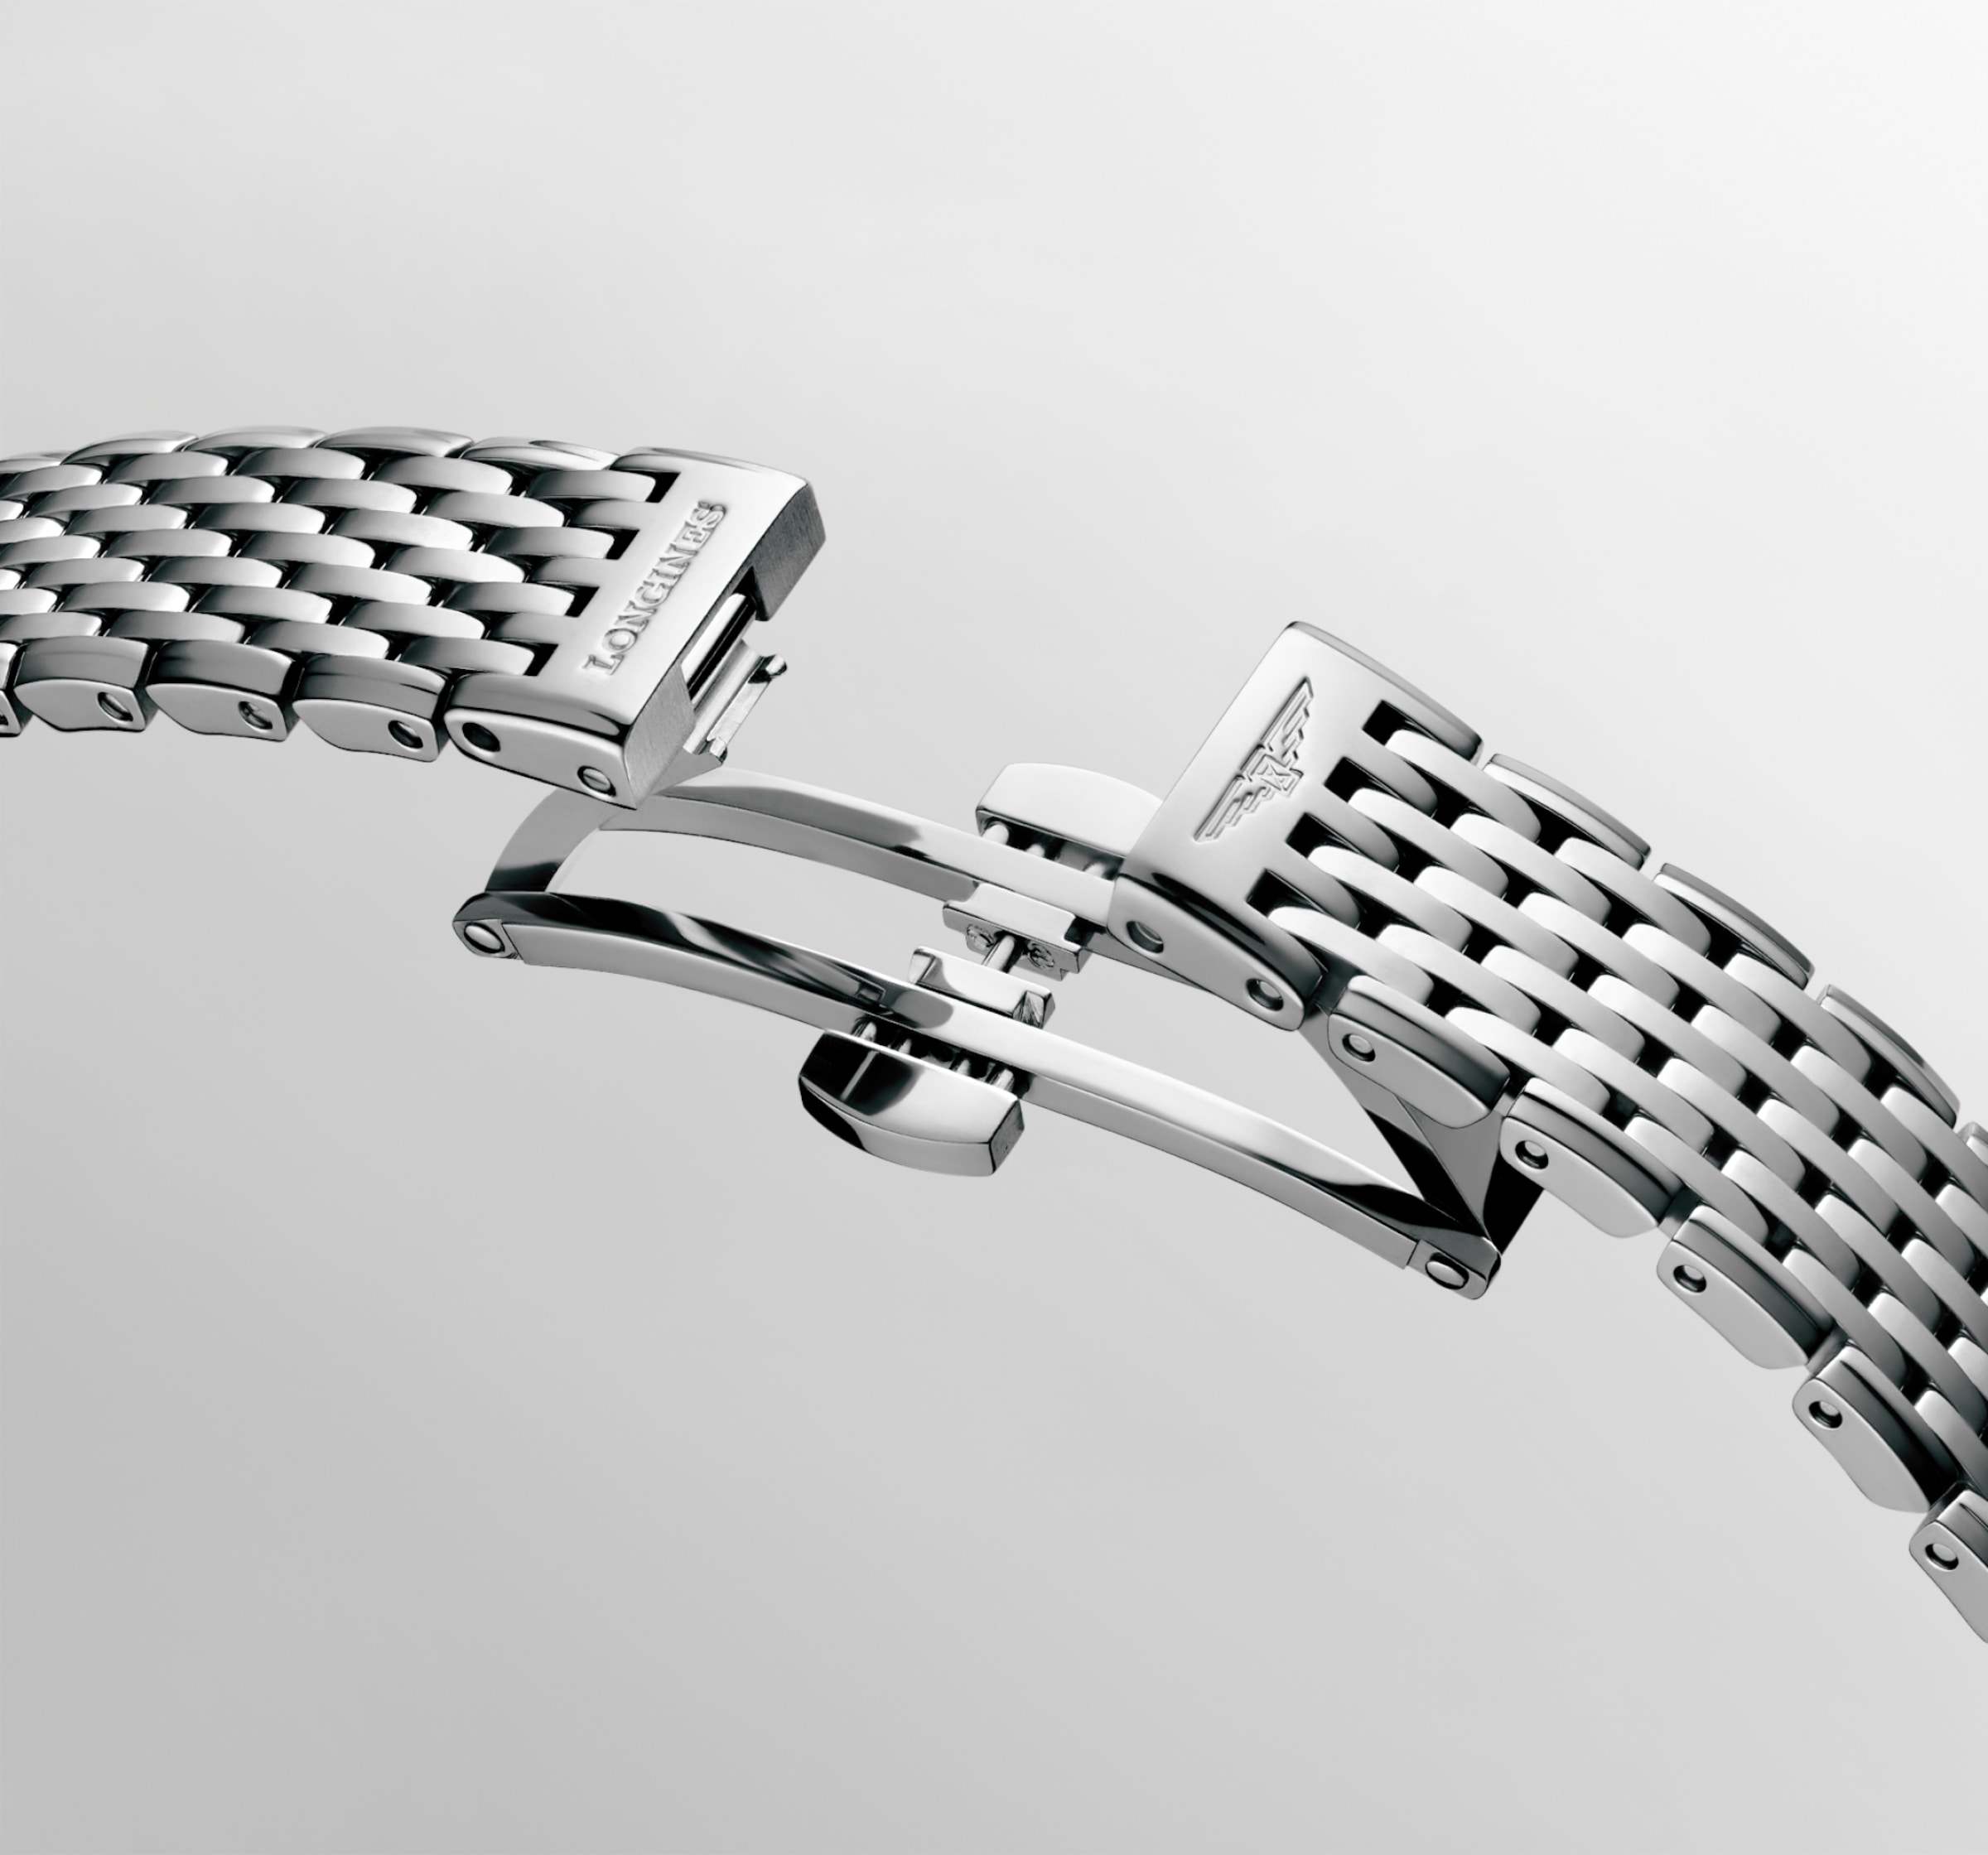 Longines LA GRANDE CLASSIQUE DE LONGINES Quartz Stainless steel Watch - L4.341.0.80.6